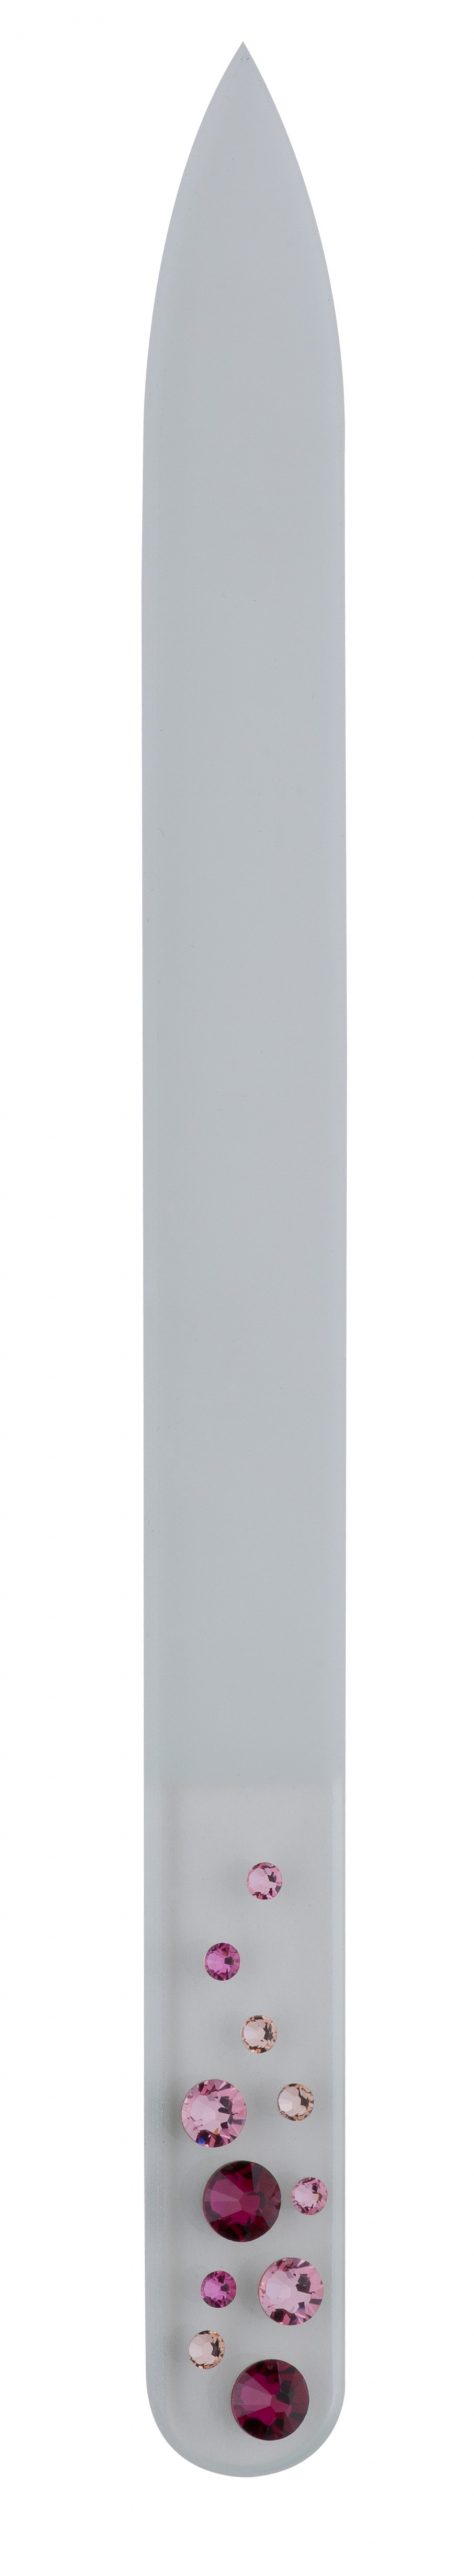 Glasnagelfeile mit Swarovski-Steinen 90.506.01-01zum Preis von 13.34 zzgl. Versand Hersteller : Heiko Wild